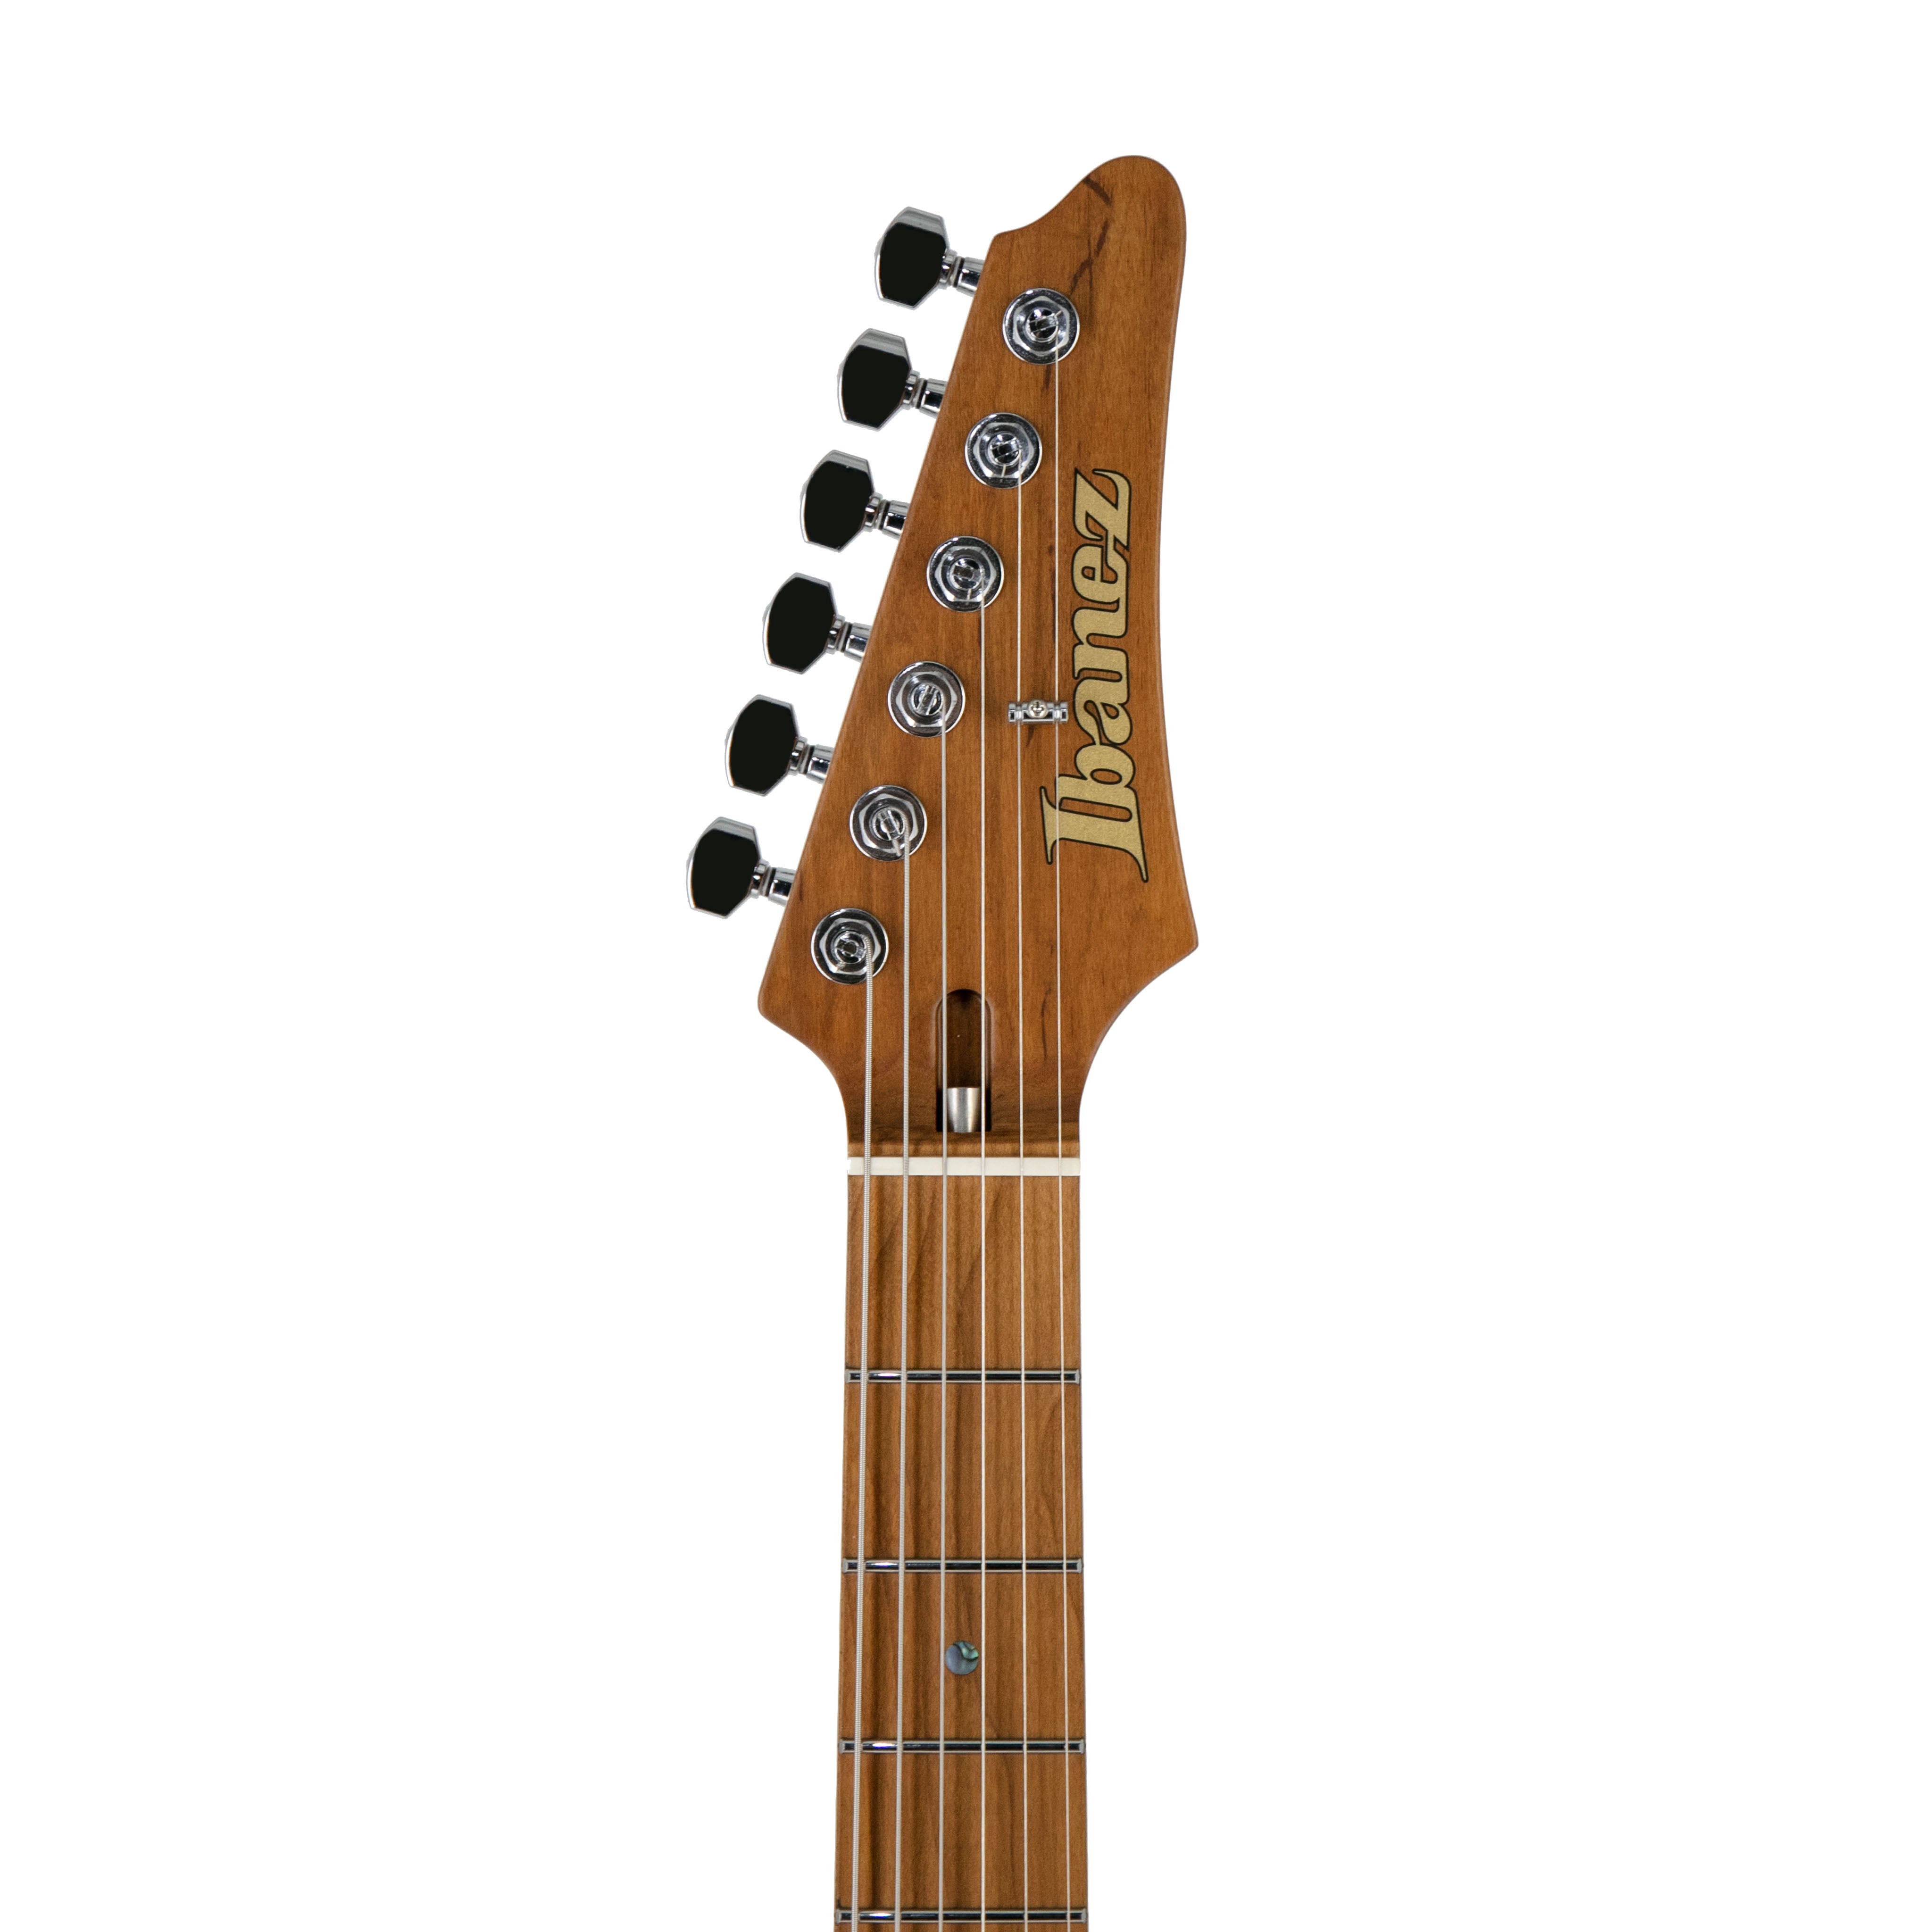 良好品】 Ibanez PC250 TBK MOD 41.2023.10 アコースティックギター